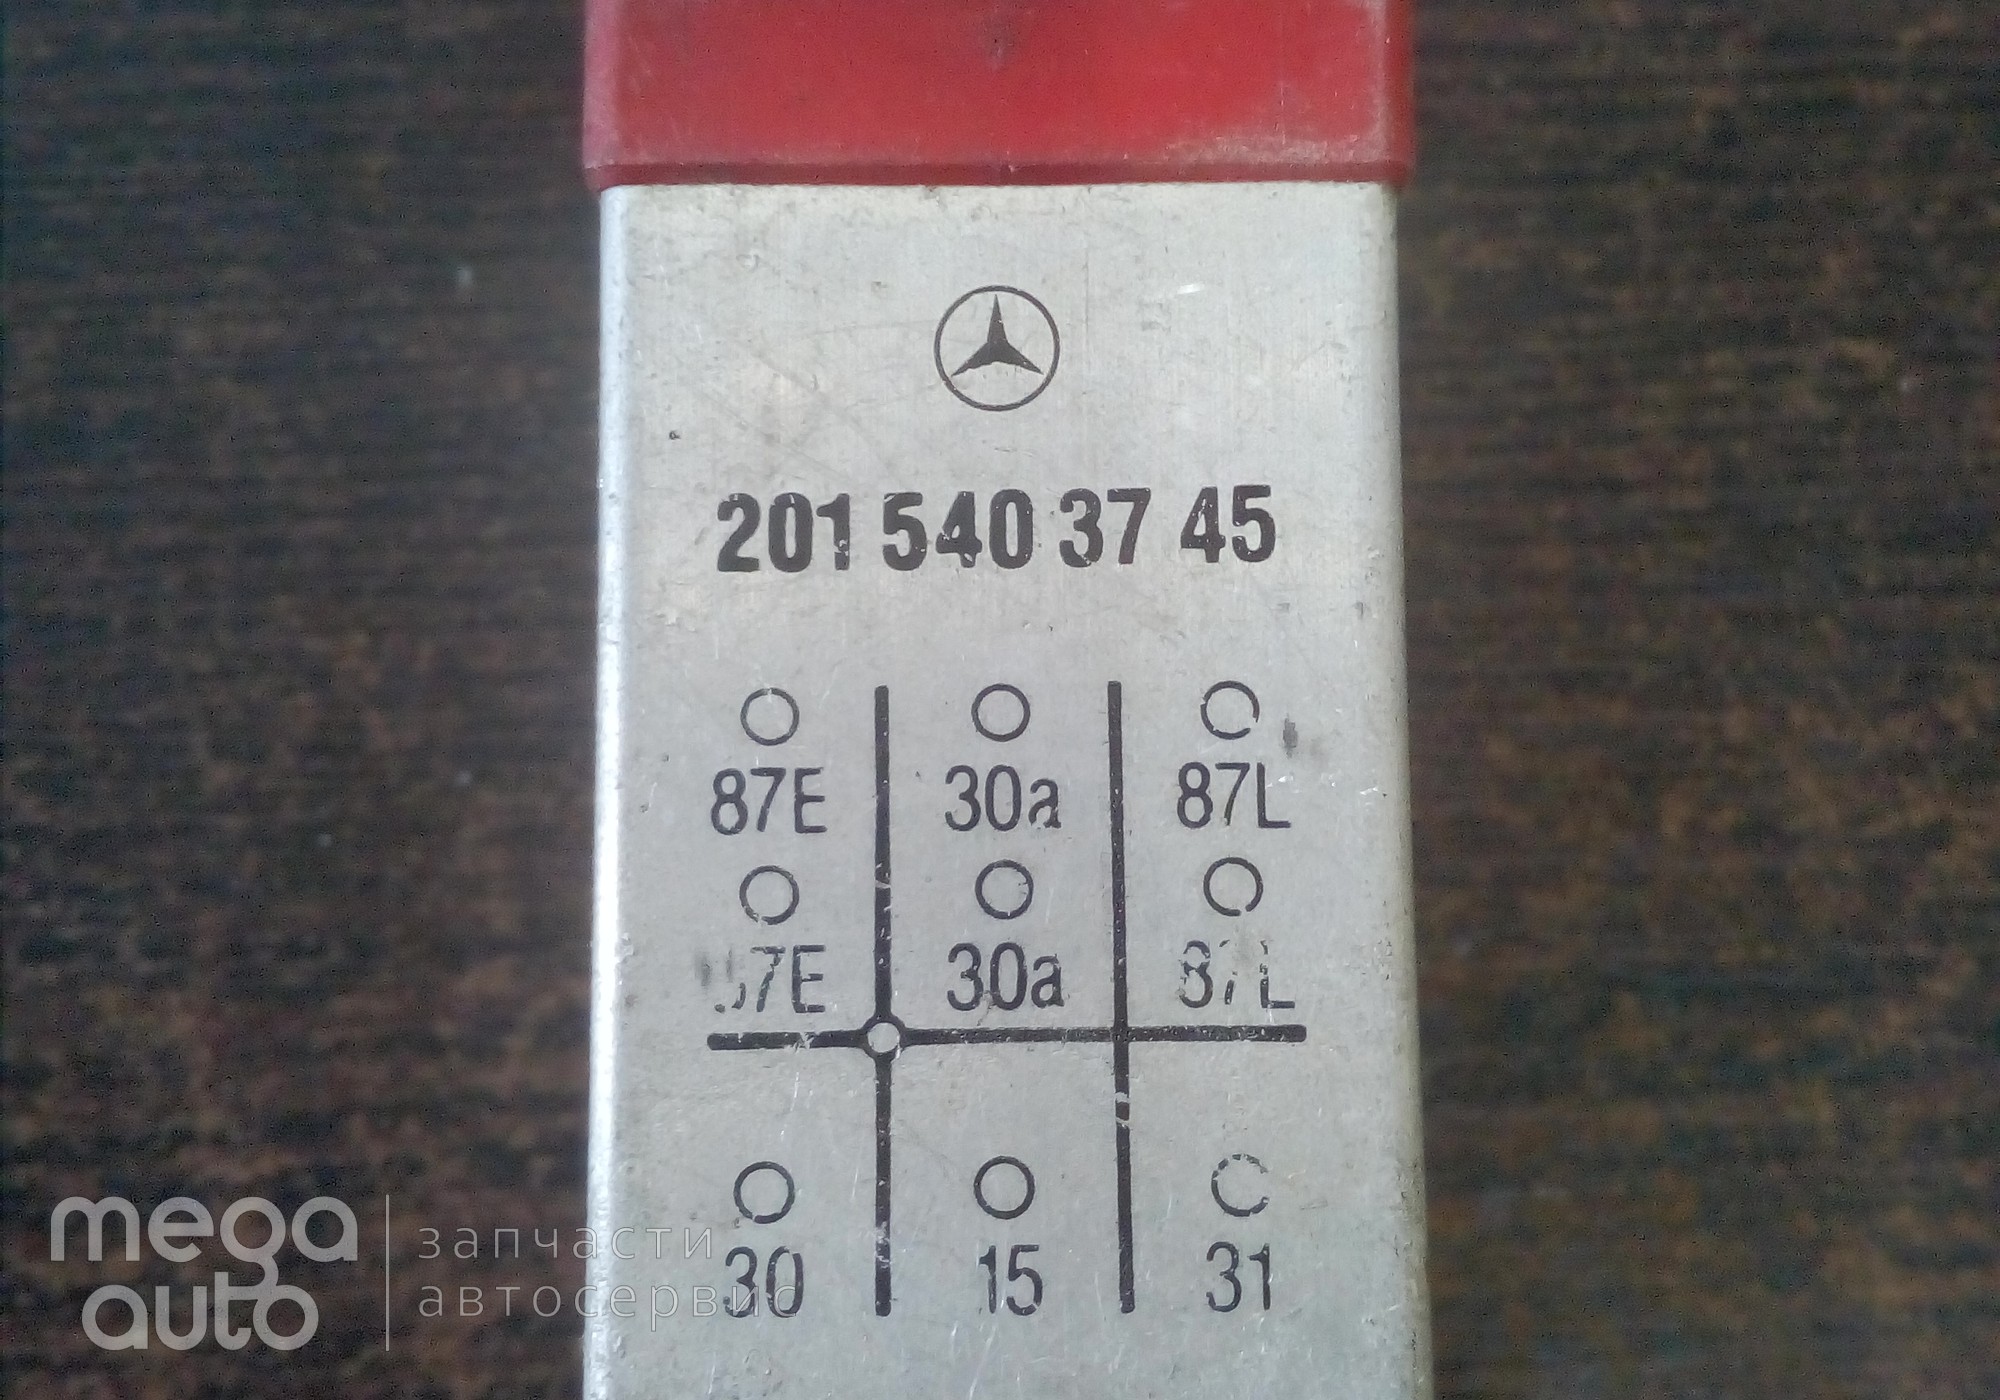 2015403745 Реле перегрузки мерседес для Mercedes-Benz Vario